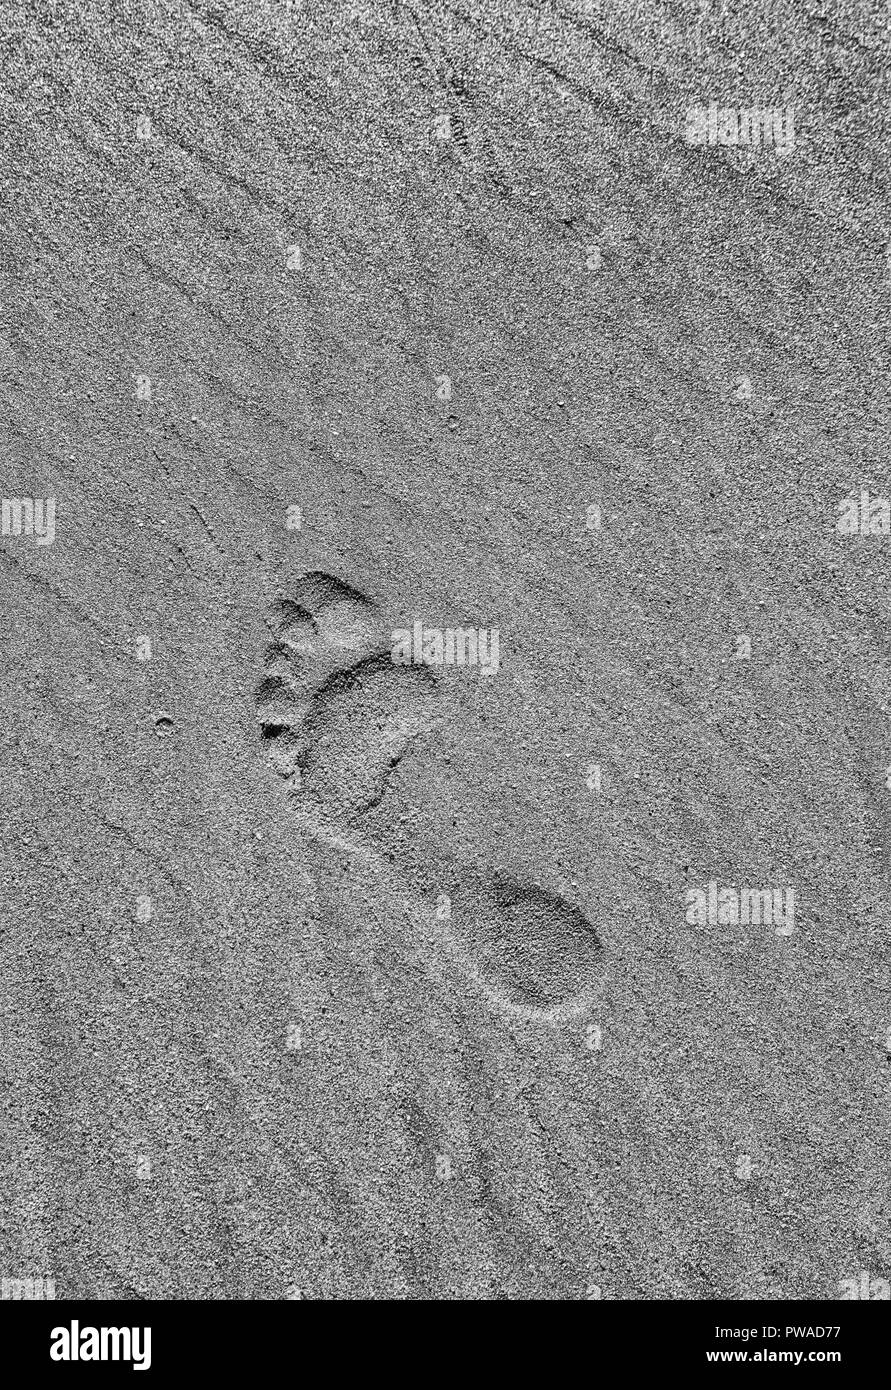 Versione in bianco e nero di footprint nudo in sabbia bagnata. Non lasciare traccia metafora, agitarsi stanza, popoli indigeni. Foto Stock